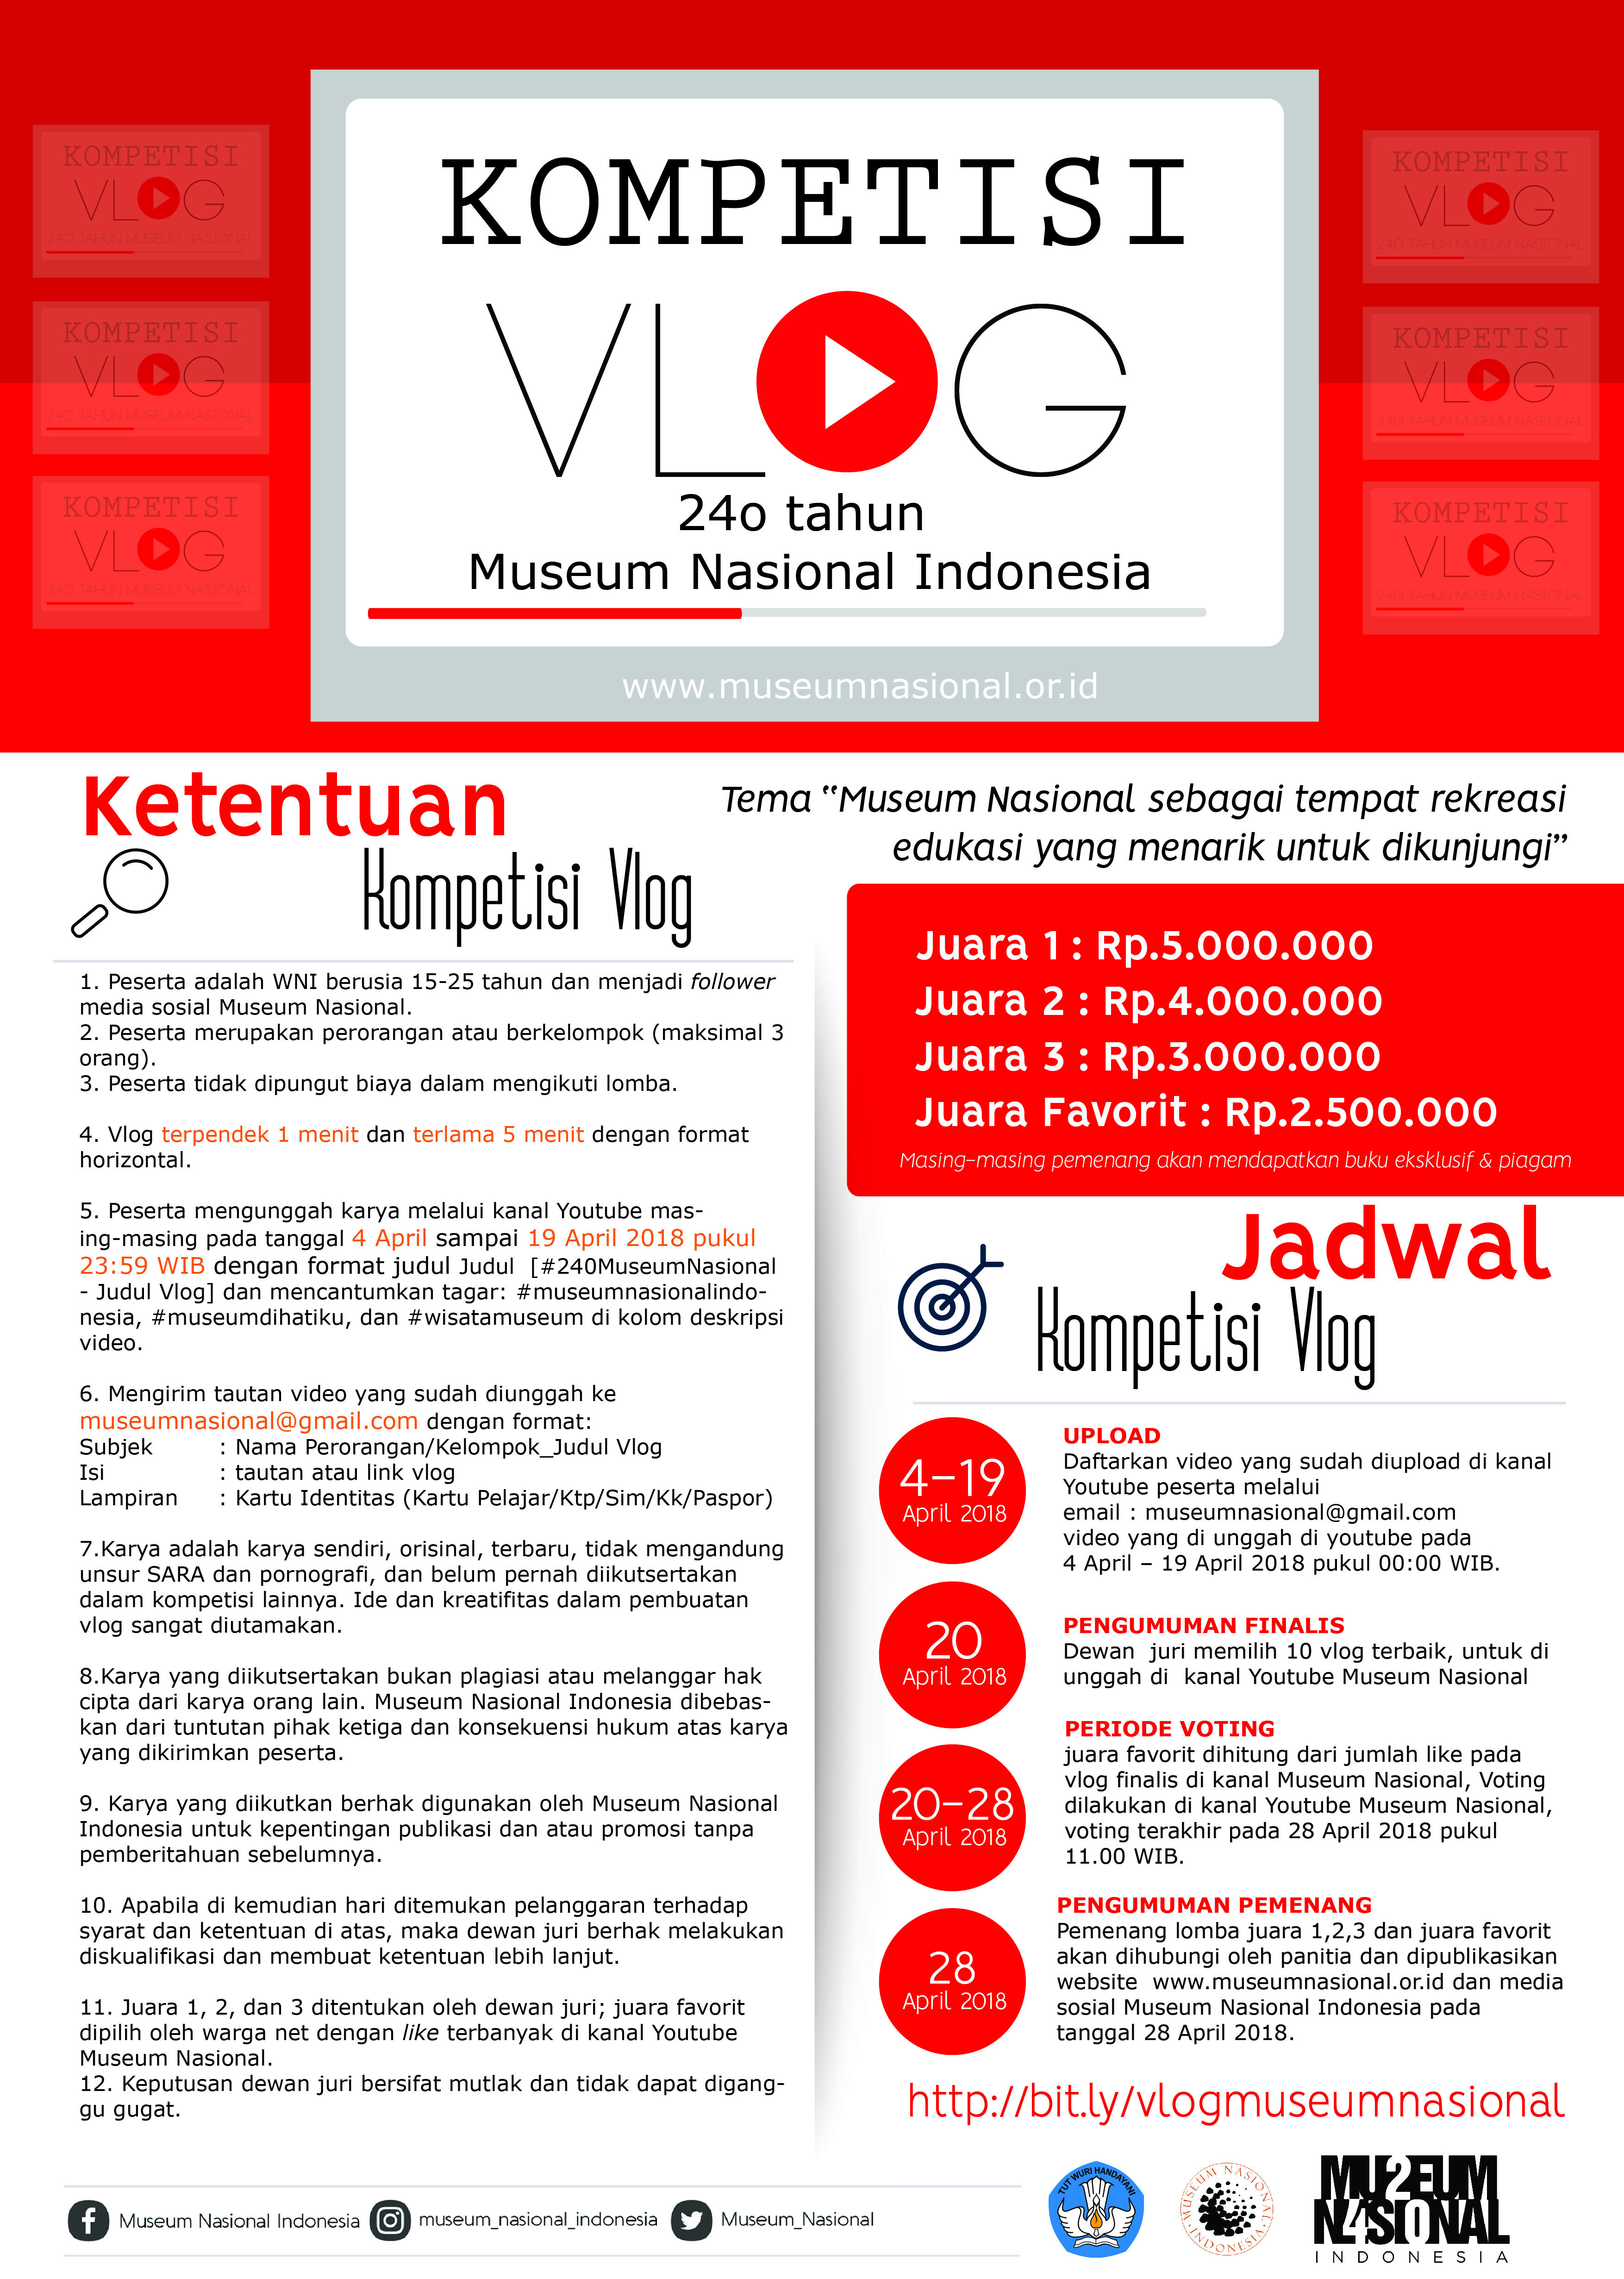 Kompetisi Vlog Museum Nasional Indonesia April 2018